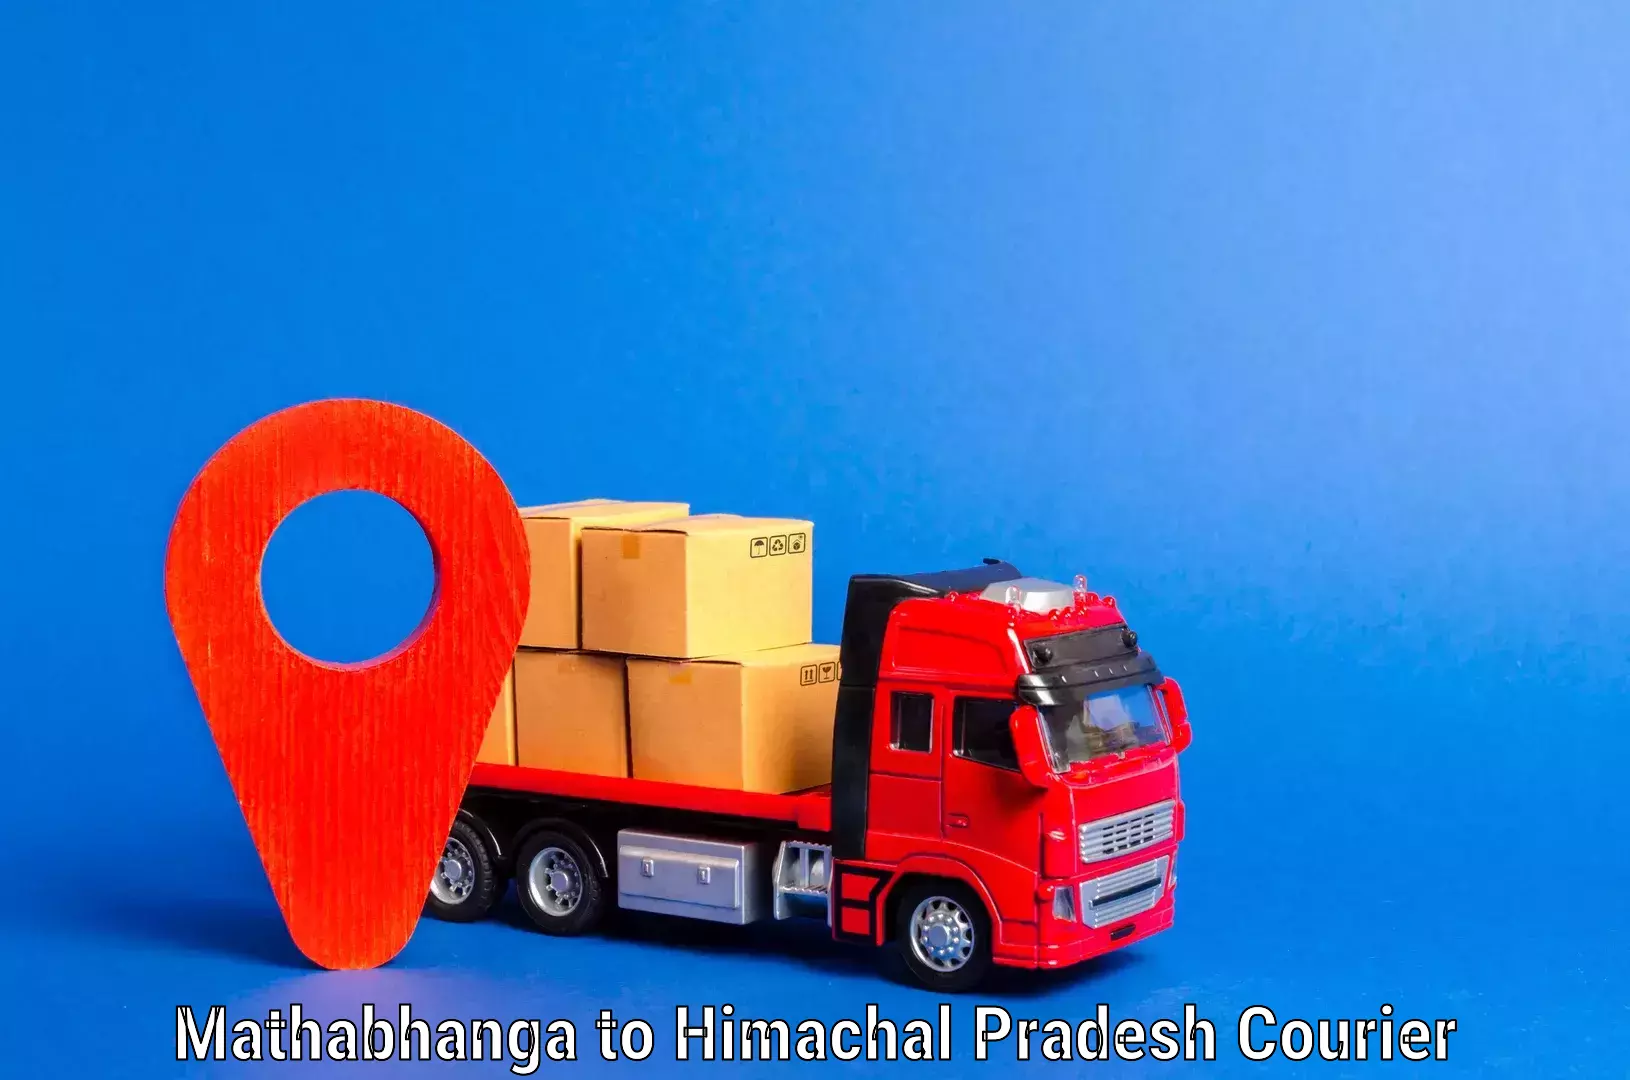 Budget-friendly movers Mathabhanga to Himachal Pradesh